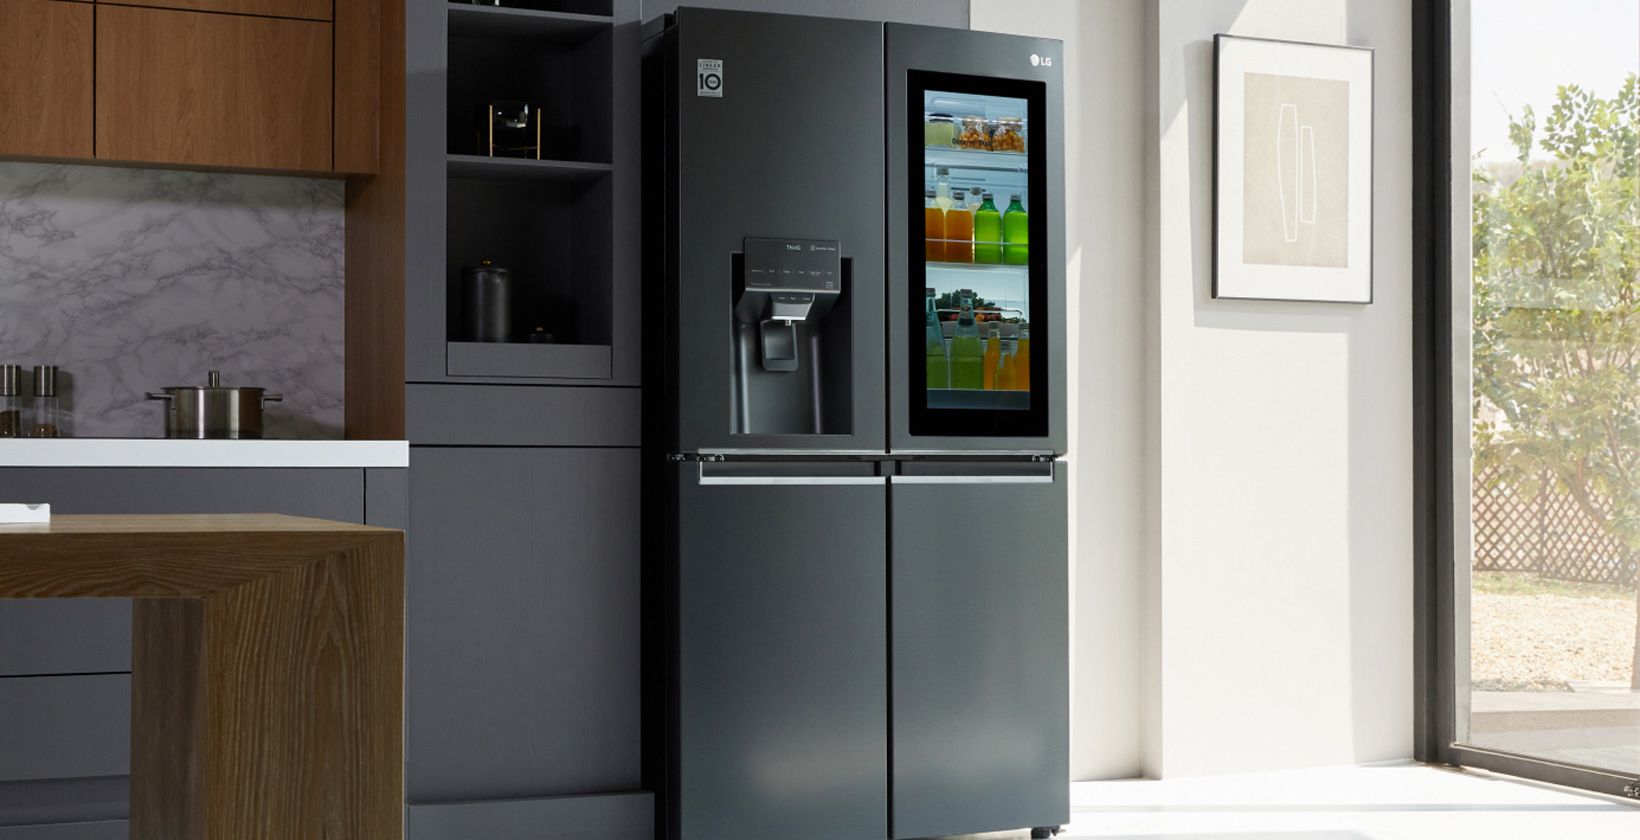 LG ThinQ smart refrigerator in kitchen